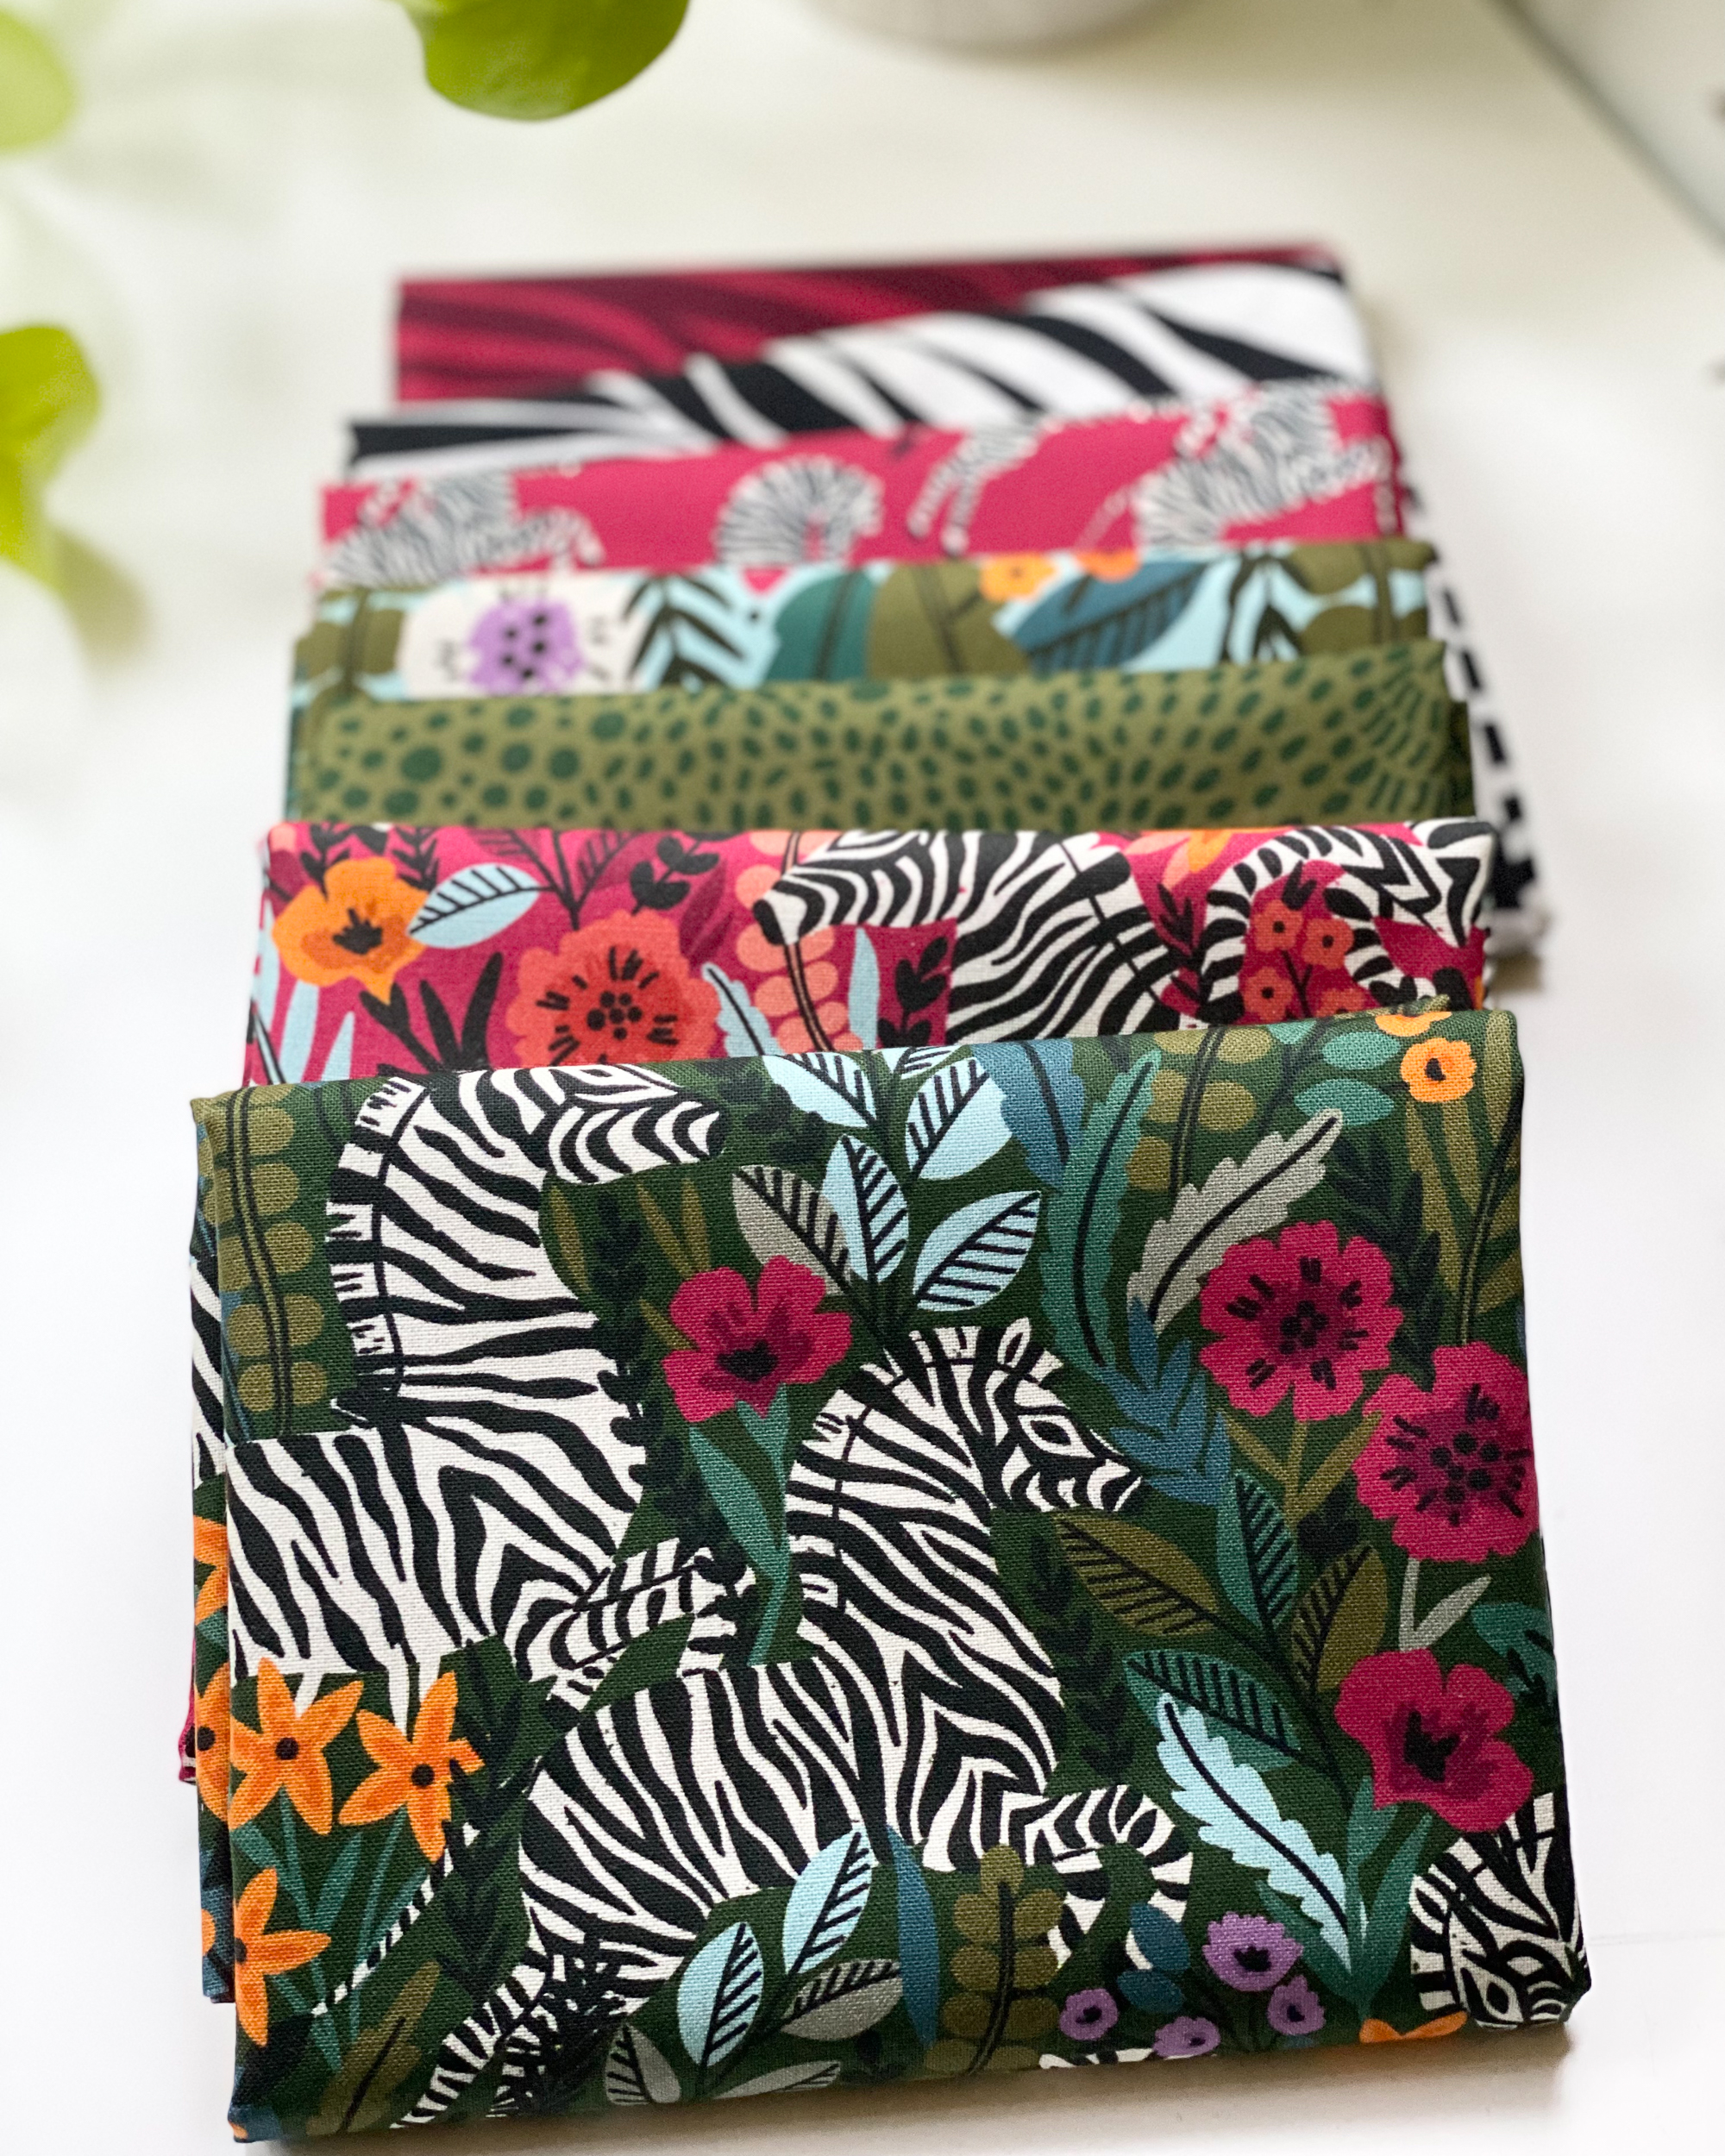 Zebras – Cloud 9 Fabrics